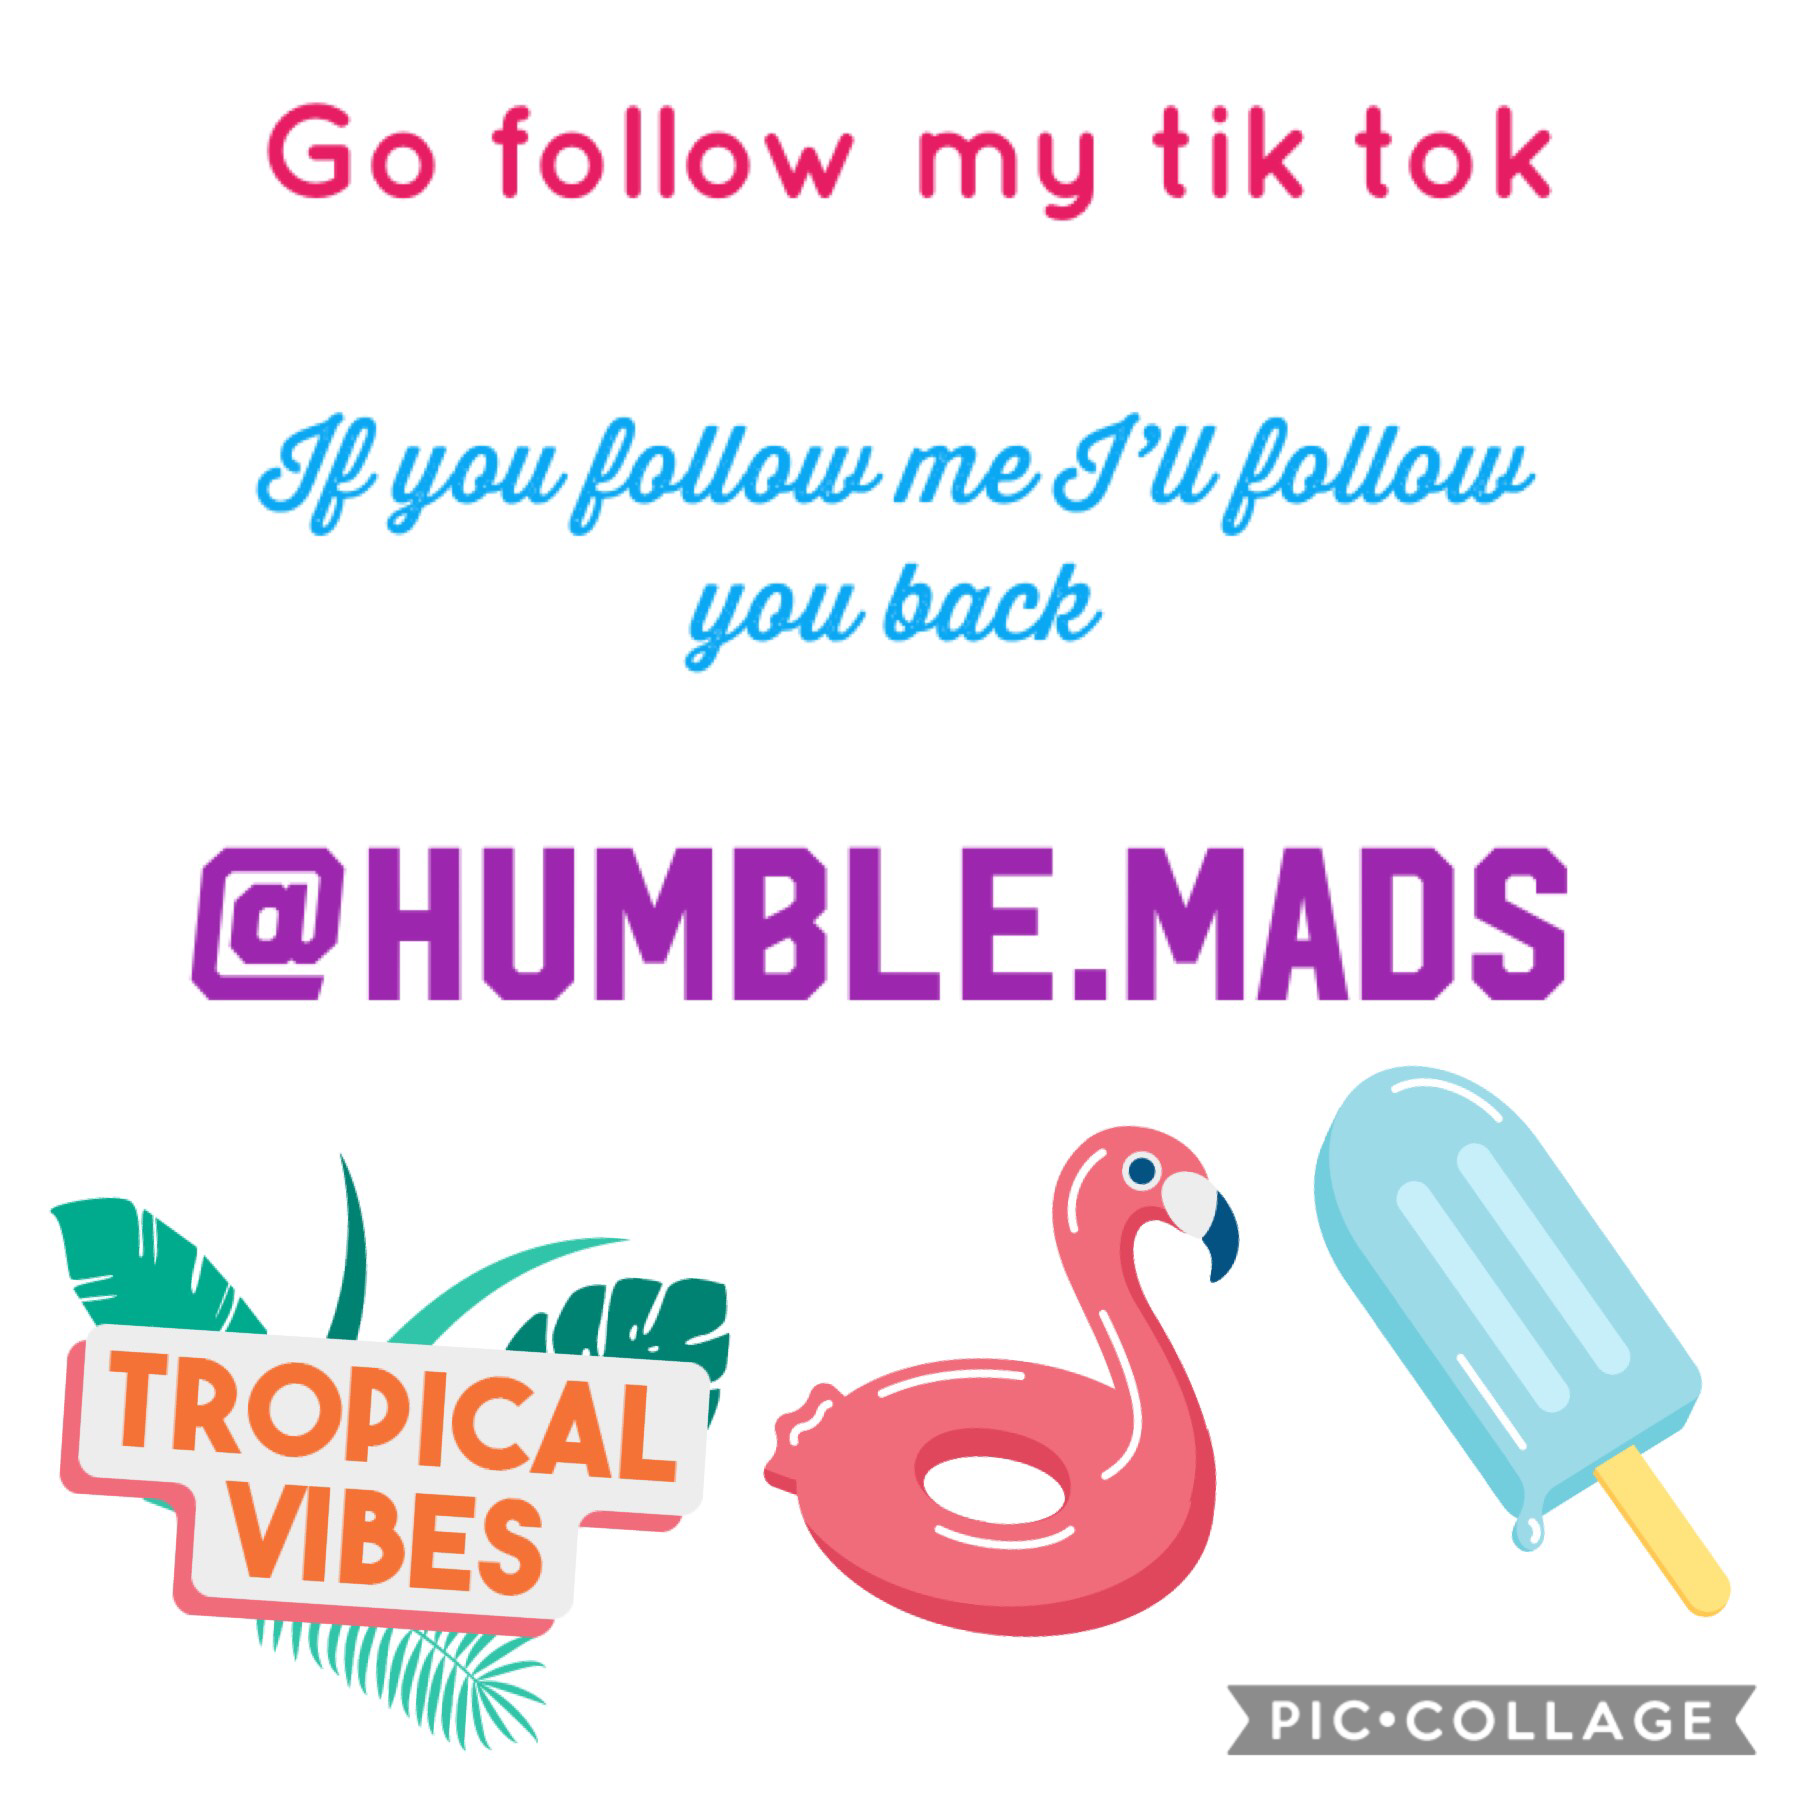 Go follow my tik tok